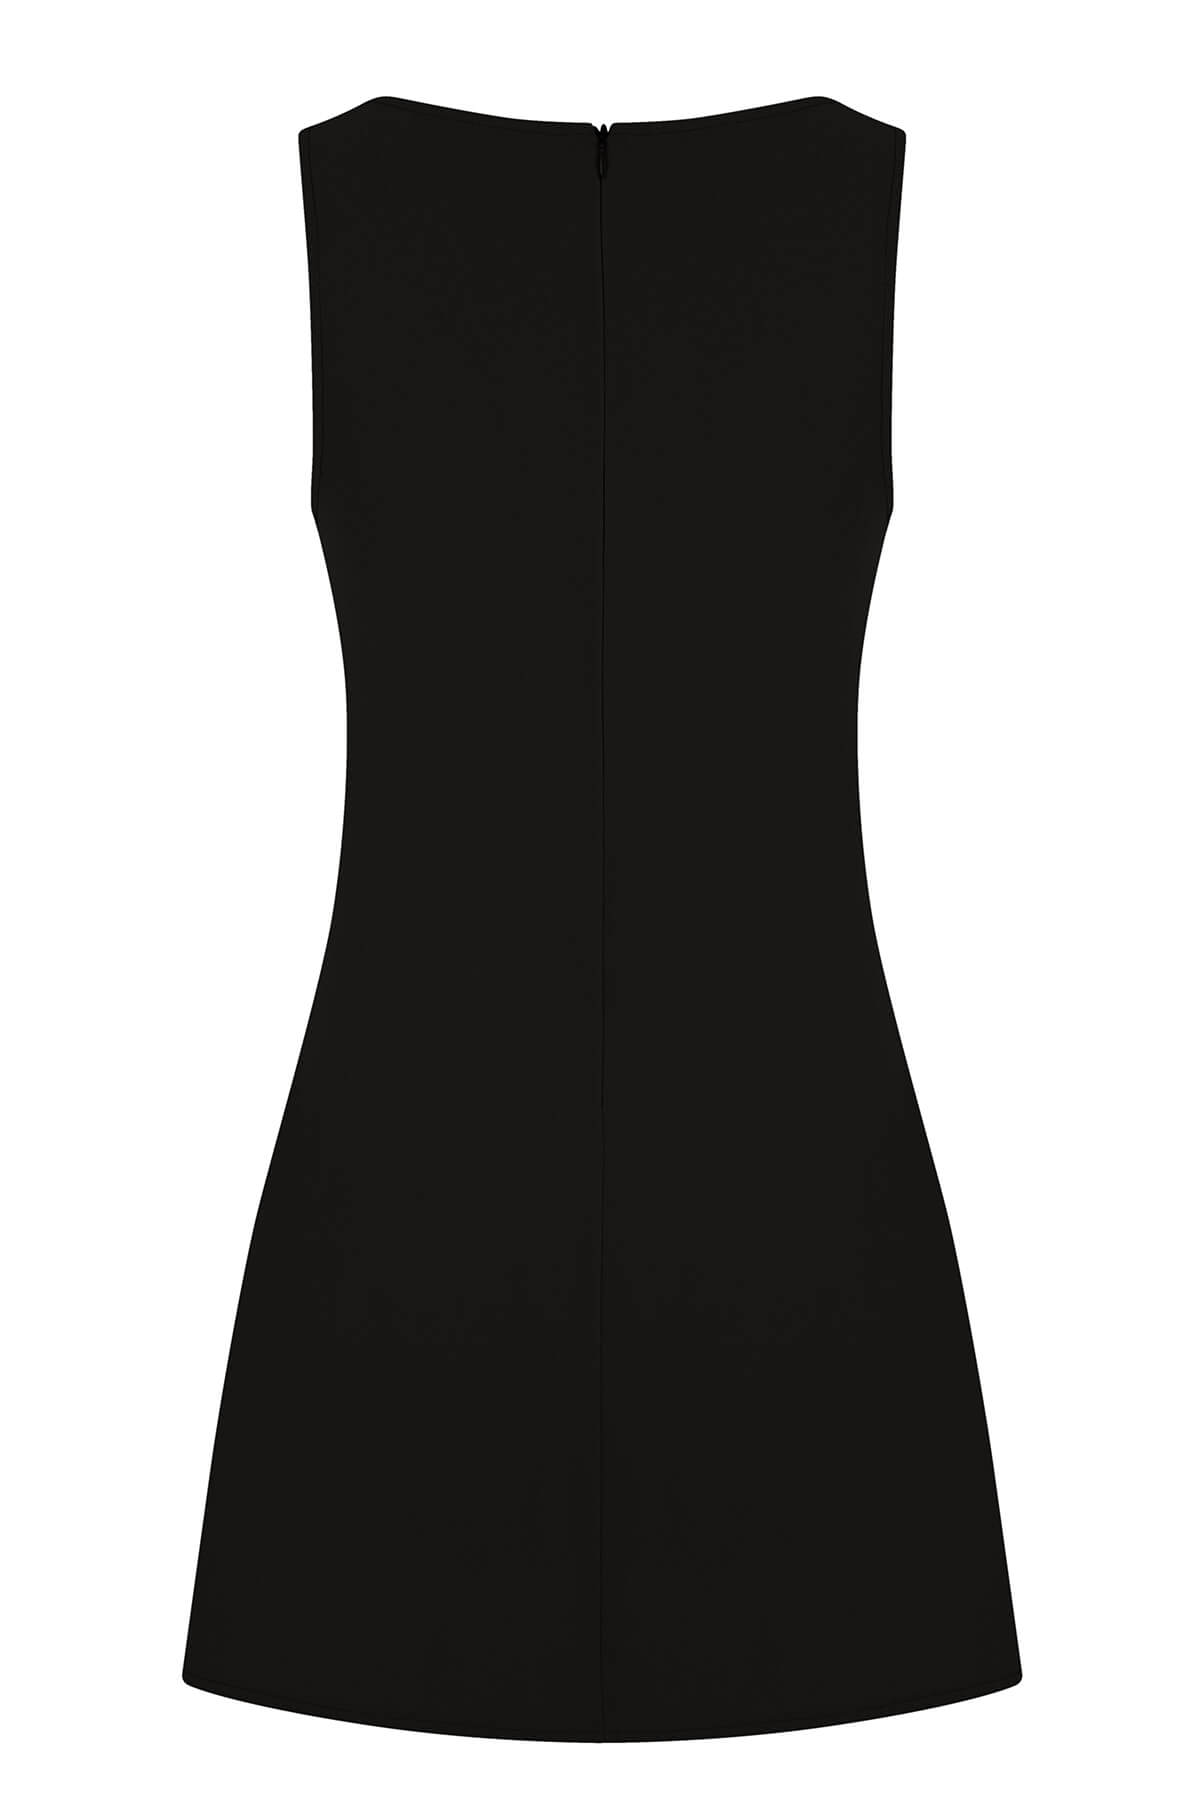 BARBIE Krep Siyah Mini Atlet Elbise